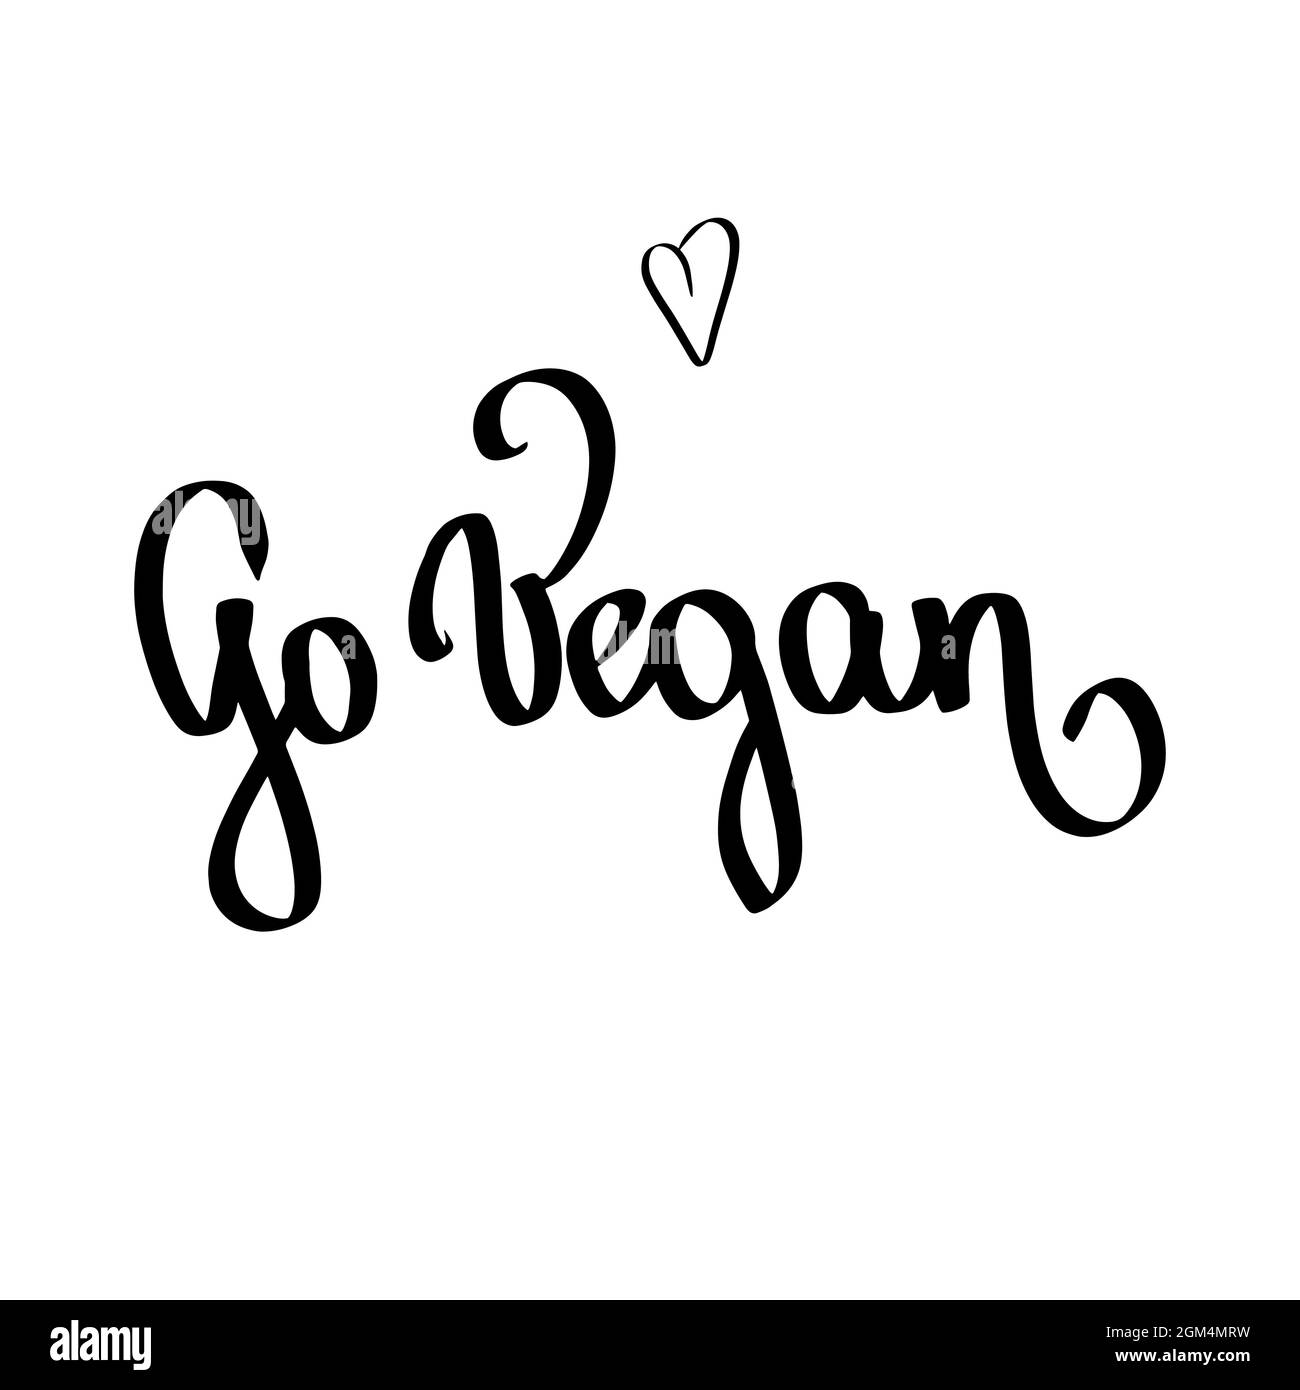 Handgeschriebener Go Vegan Text-Schriftzug mit schwarzem Herz auf weißer Vektorgrafik. Kalligraphie Poster für Eco Score Shop, Aufkleber Druckvorlage. Stock Vektor